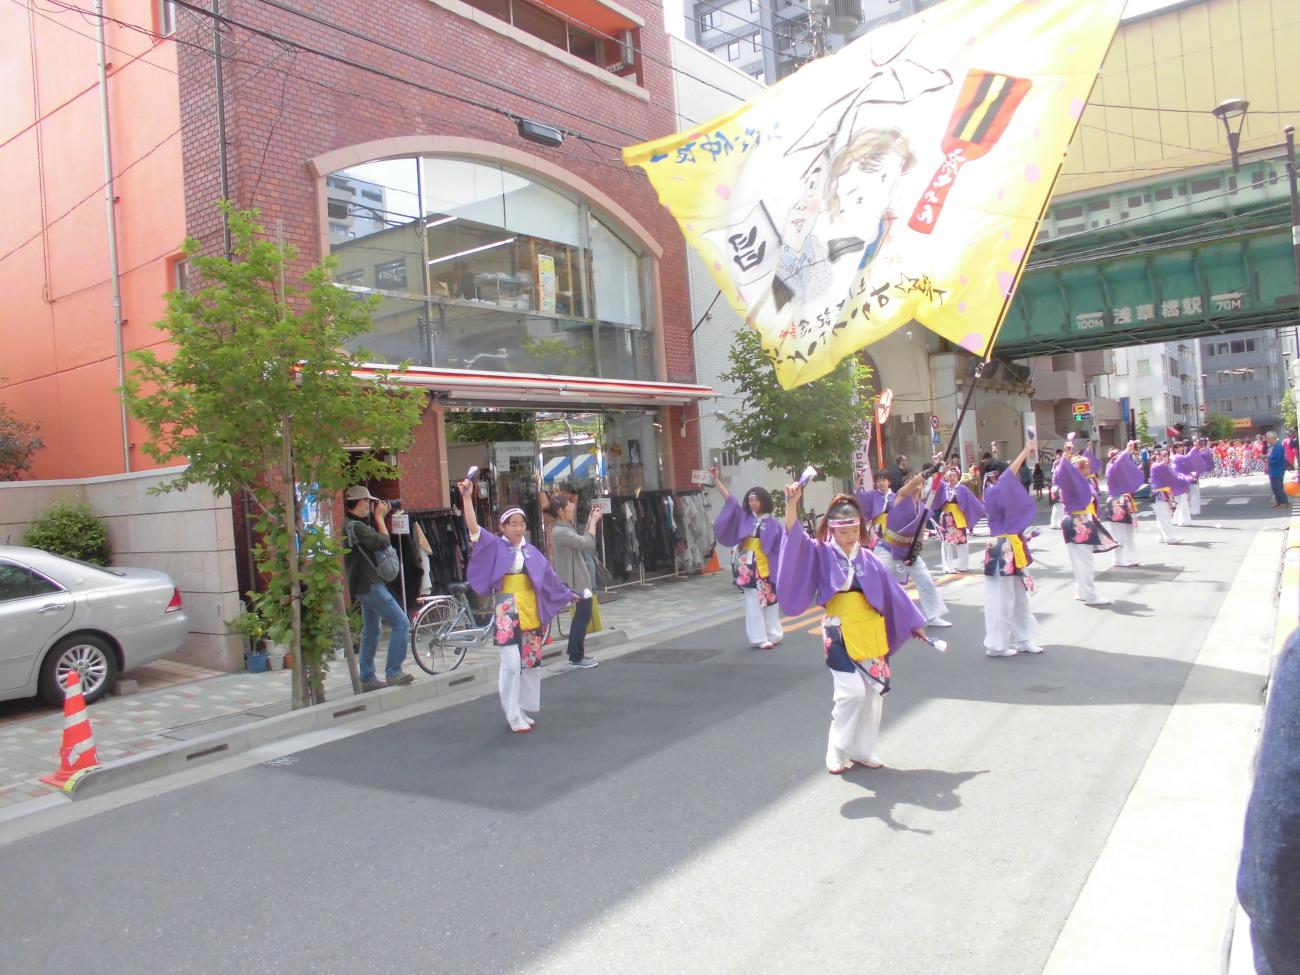 一部の道路上で、紫を基調とした祭り衣装を着た方々が列になって踊り、男性が列の間で大きな旗を持ち振っている写真